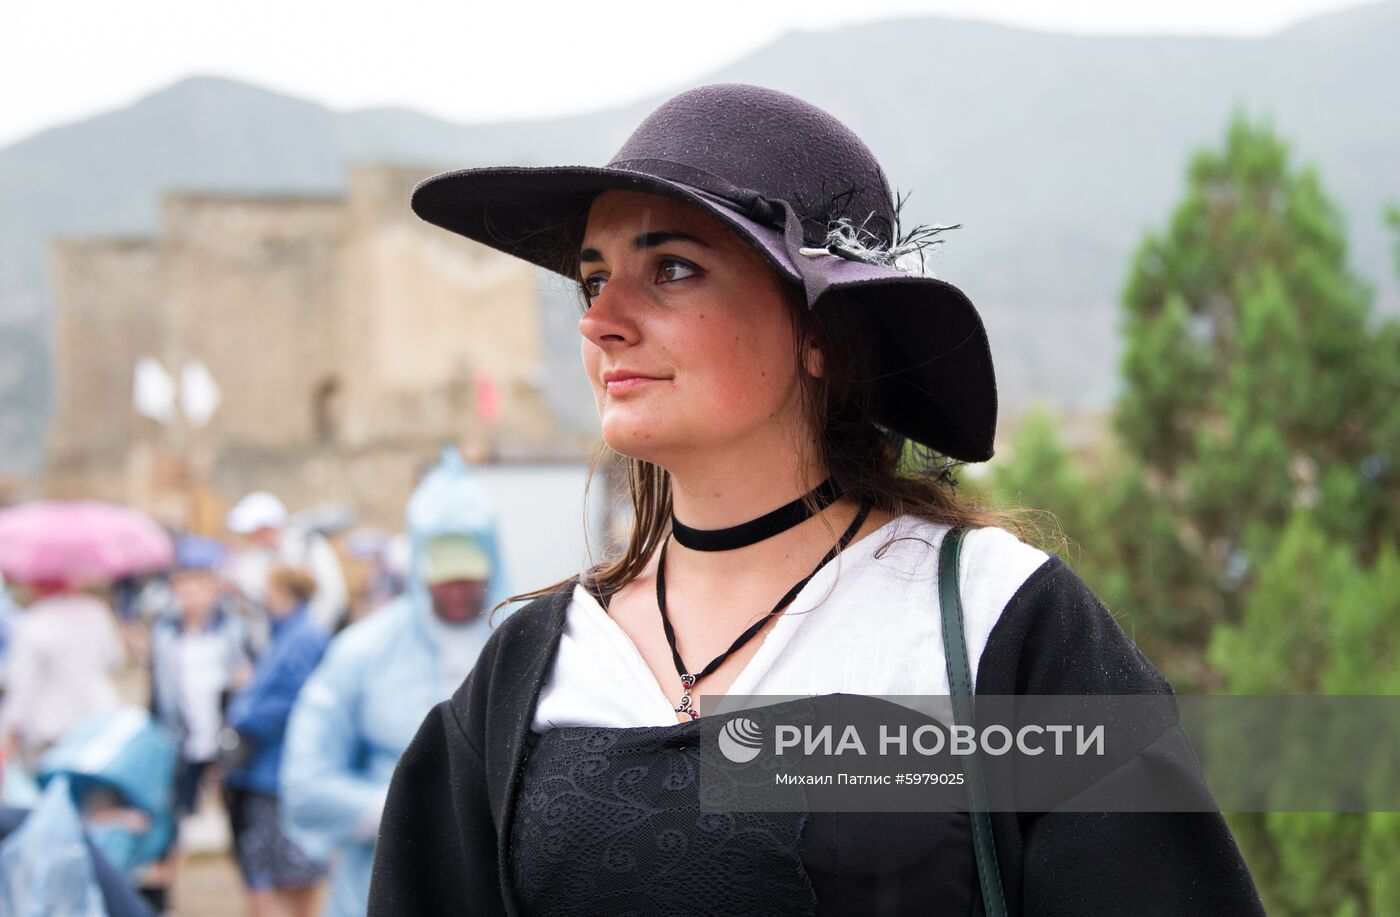 Рыцарский фестиваль "Генуэзский шлем" в Крыму